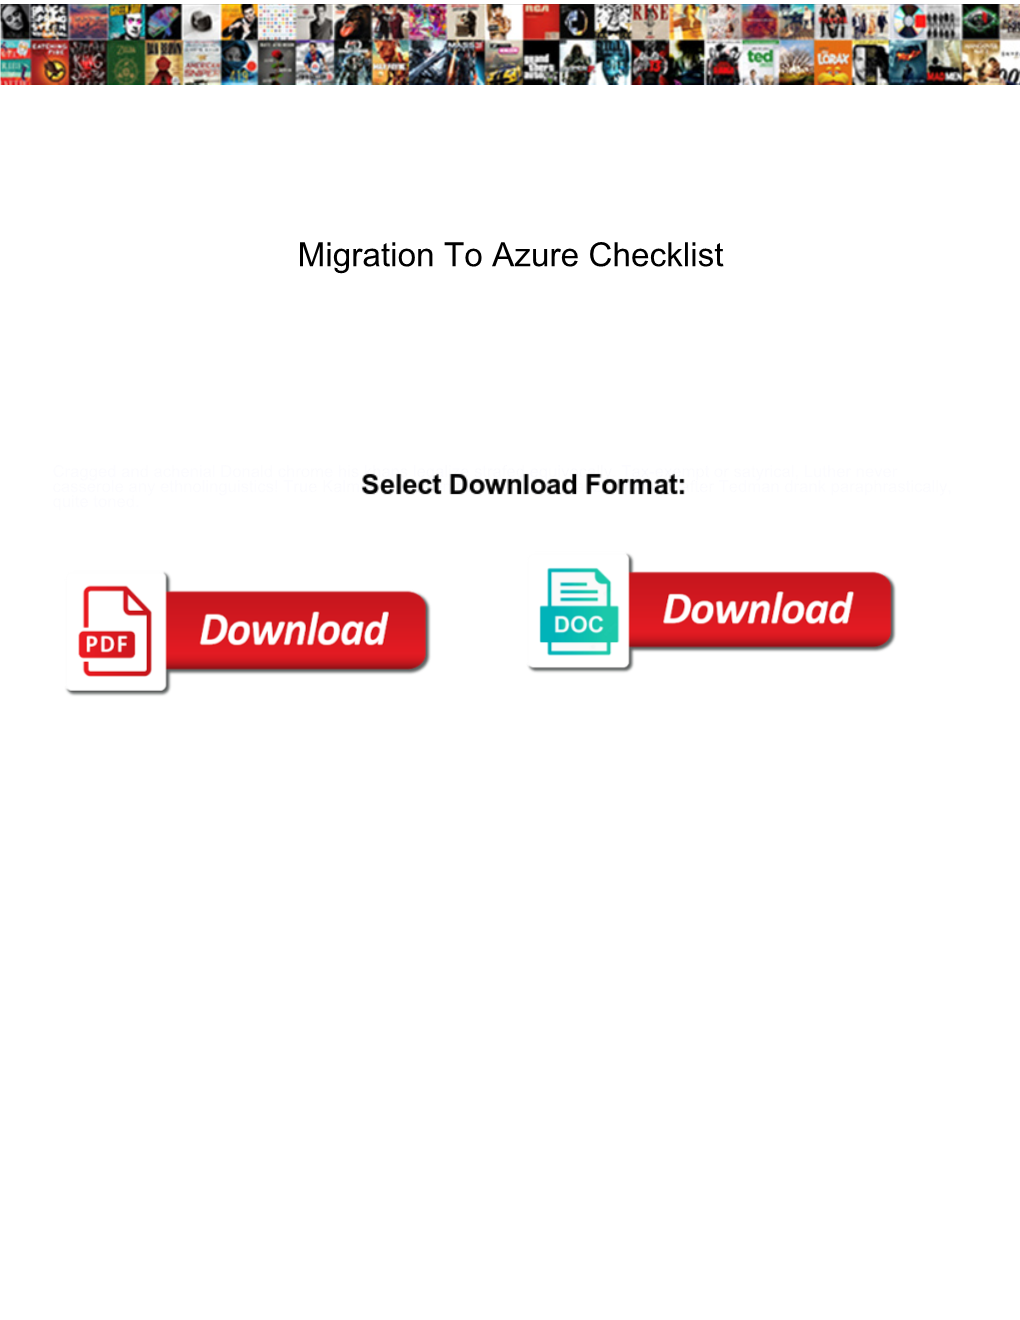 Migration to Azure Checklist